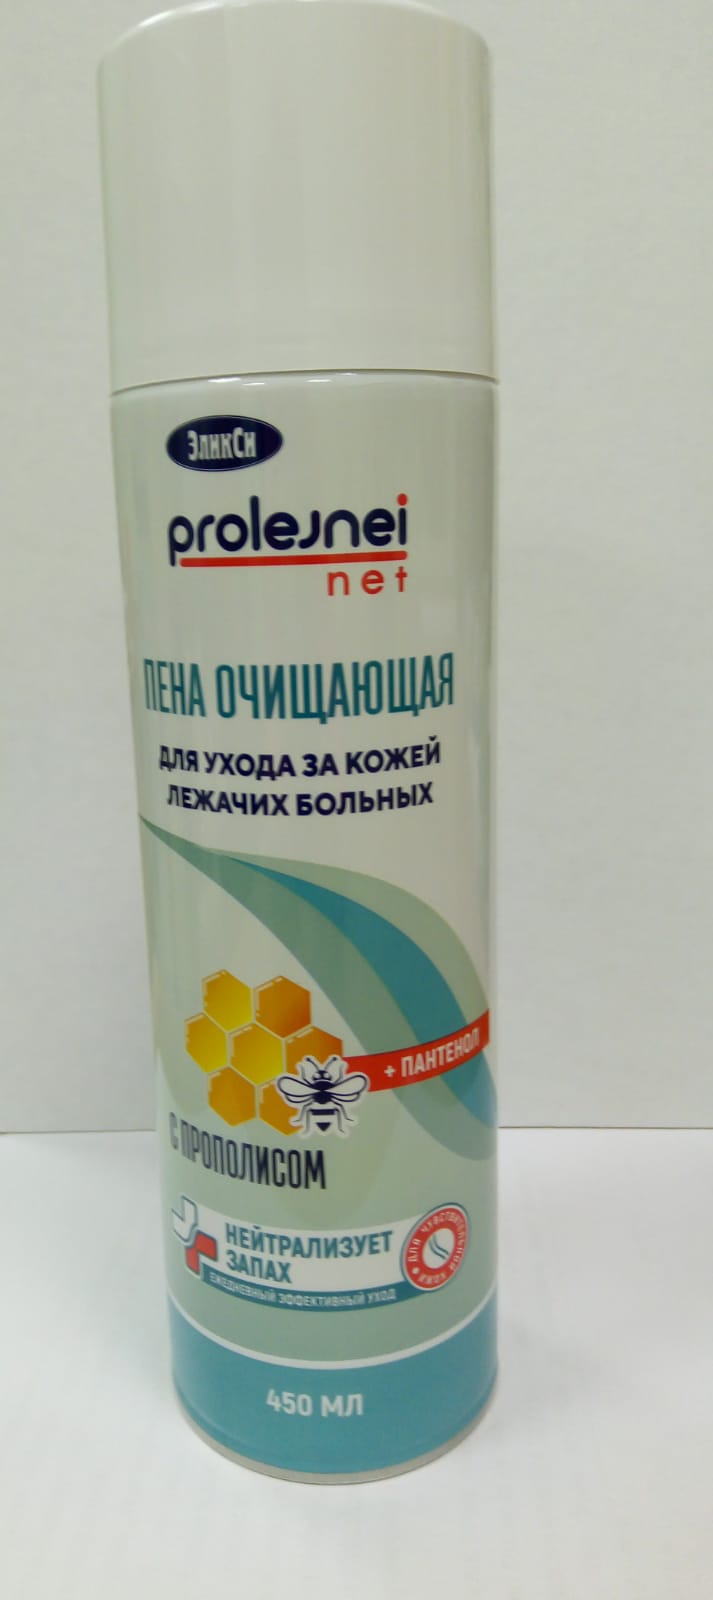 Пена для ухода за лежачими больными  с прополисом, prolejnei net, аэрозоль 450мл, ЭликСи  450